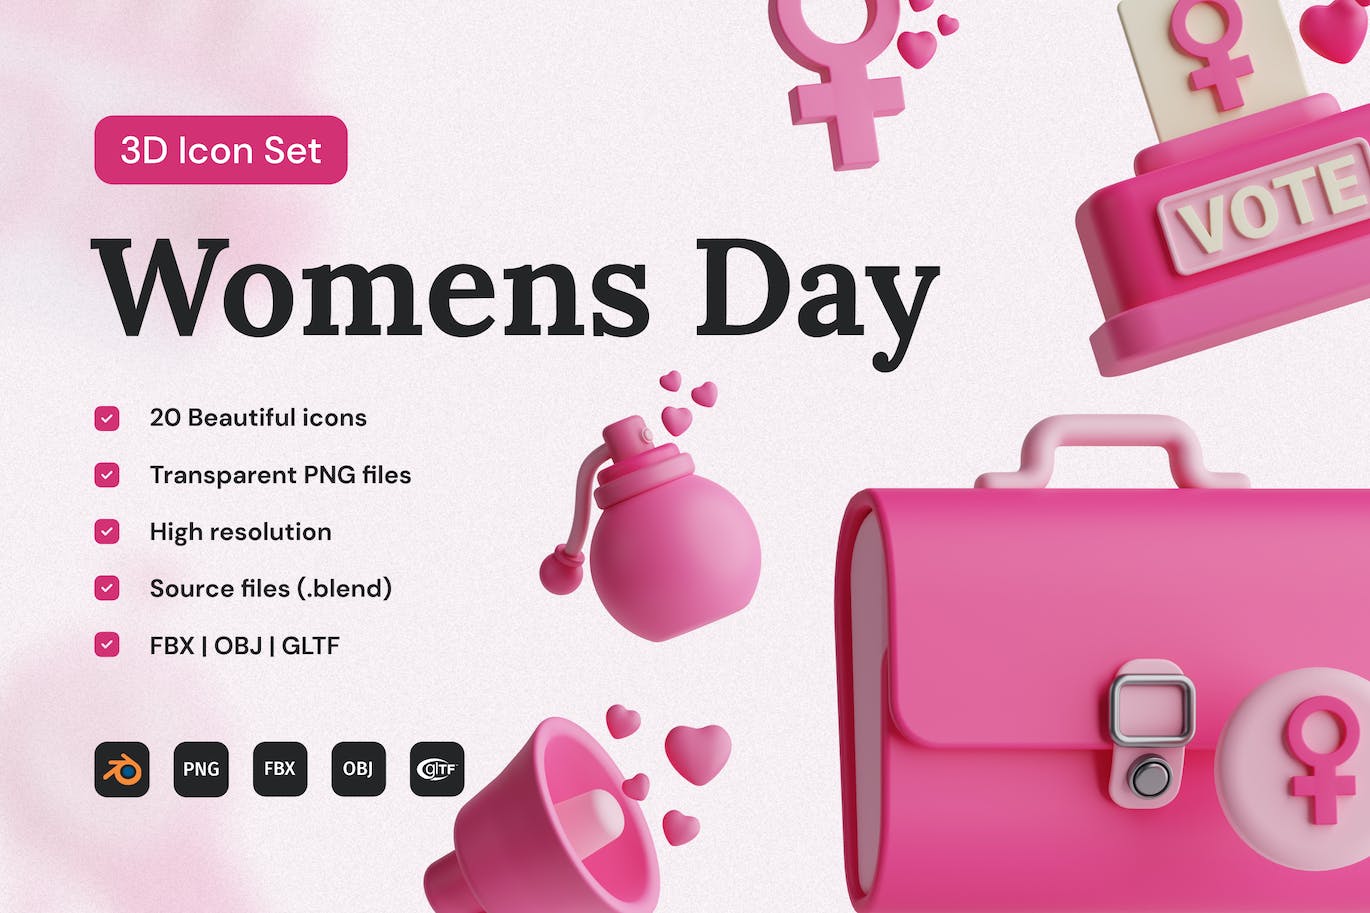 妇女节粉色3D图标集 Women’s Day 3D Icon Set 图标素材 第1张